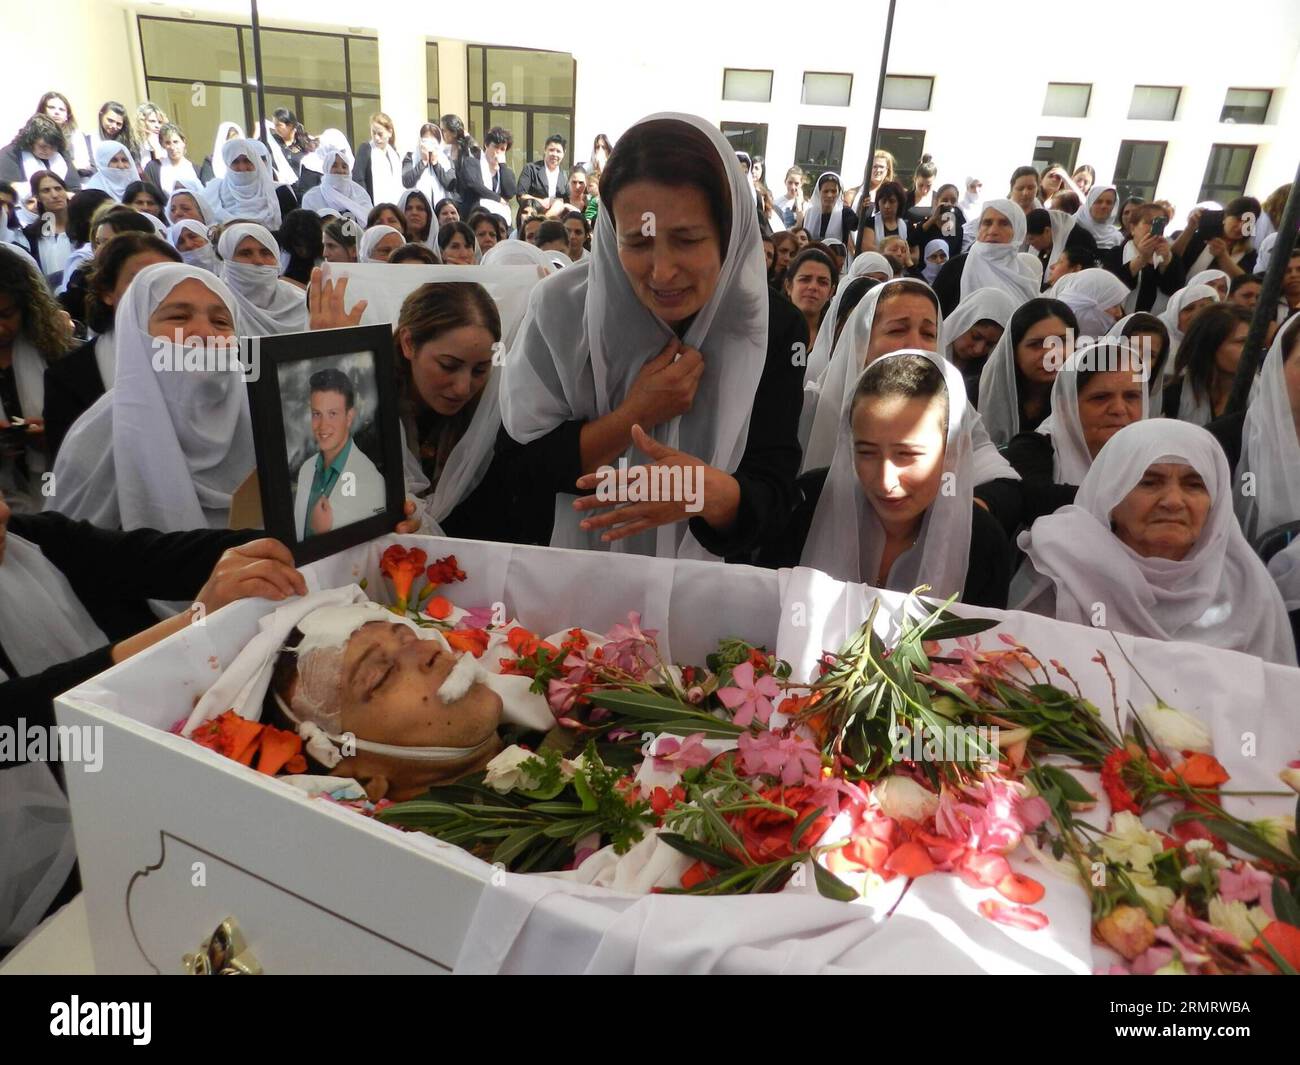 (140804) -- BEIRUT, 4 agosto 2014 -- la gente partecipa ai funerali di un soldato libanese nella valle orientale di Bekaa, 4 agosto 2014. Almeno 14 soldati sono stati uccisi mentre diverse dozzine sono rimasti feriti e 20 sono ancora dispersi dagli scontri tra l'esercito libanese e i pistoleri siriani alla periferia della città di confine orientale di Arsal il 2 agosto 2014. ) LIBANO-SIRIA-BORDER-CLASH-FUNERALE Taher PUBLICATIONxNOTxINxCHN Beirut 4 agosto 2014 celebrità partecipano al funerale di un soldato libanese nella valle orientale di Bekaa 4 agosto 2014 almeno 14 soldati sono stati UCCISI mentre diverse decine sono stati feriti e 20 silenziosi dispersi da T Foto Stock